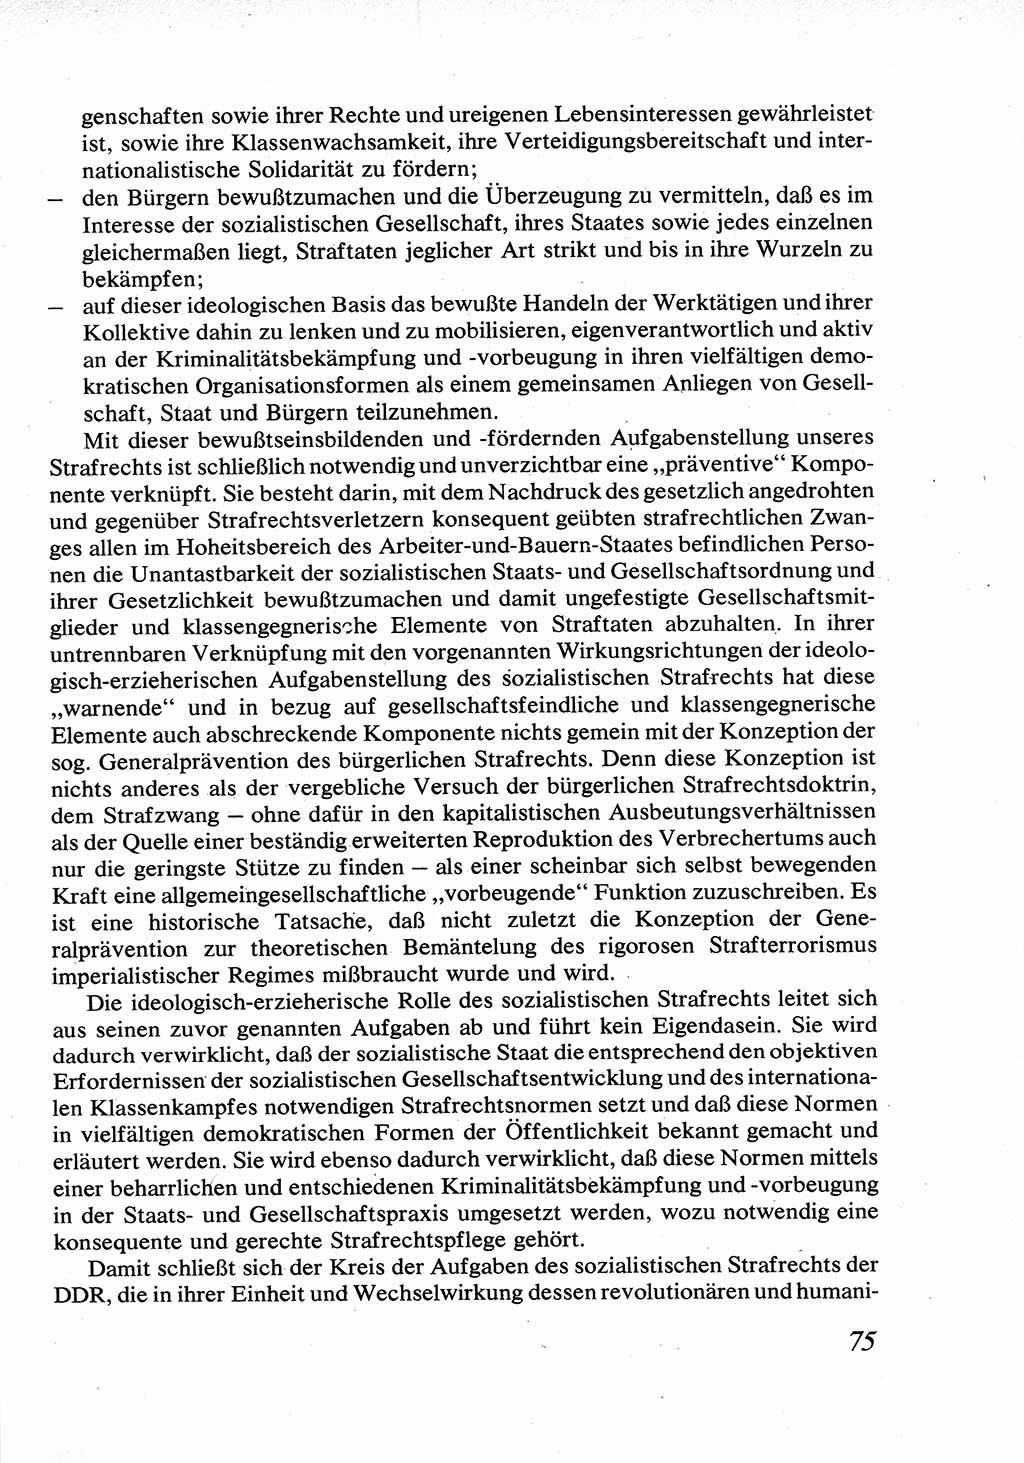 Strafrecht [Deutsche Demokratische Republik (DDR)], Allgemeiner Teil, Lehrbuch 1976, Seite 75 (Strafr. DDR AT Lb. 1976, S. 75)